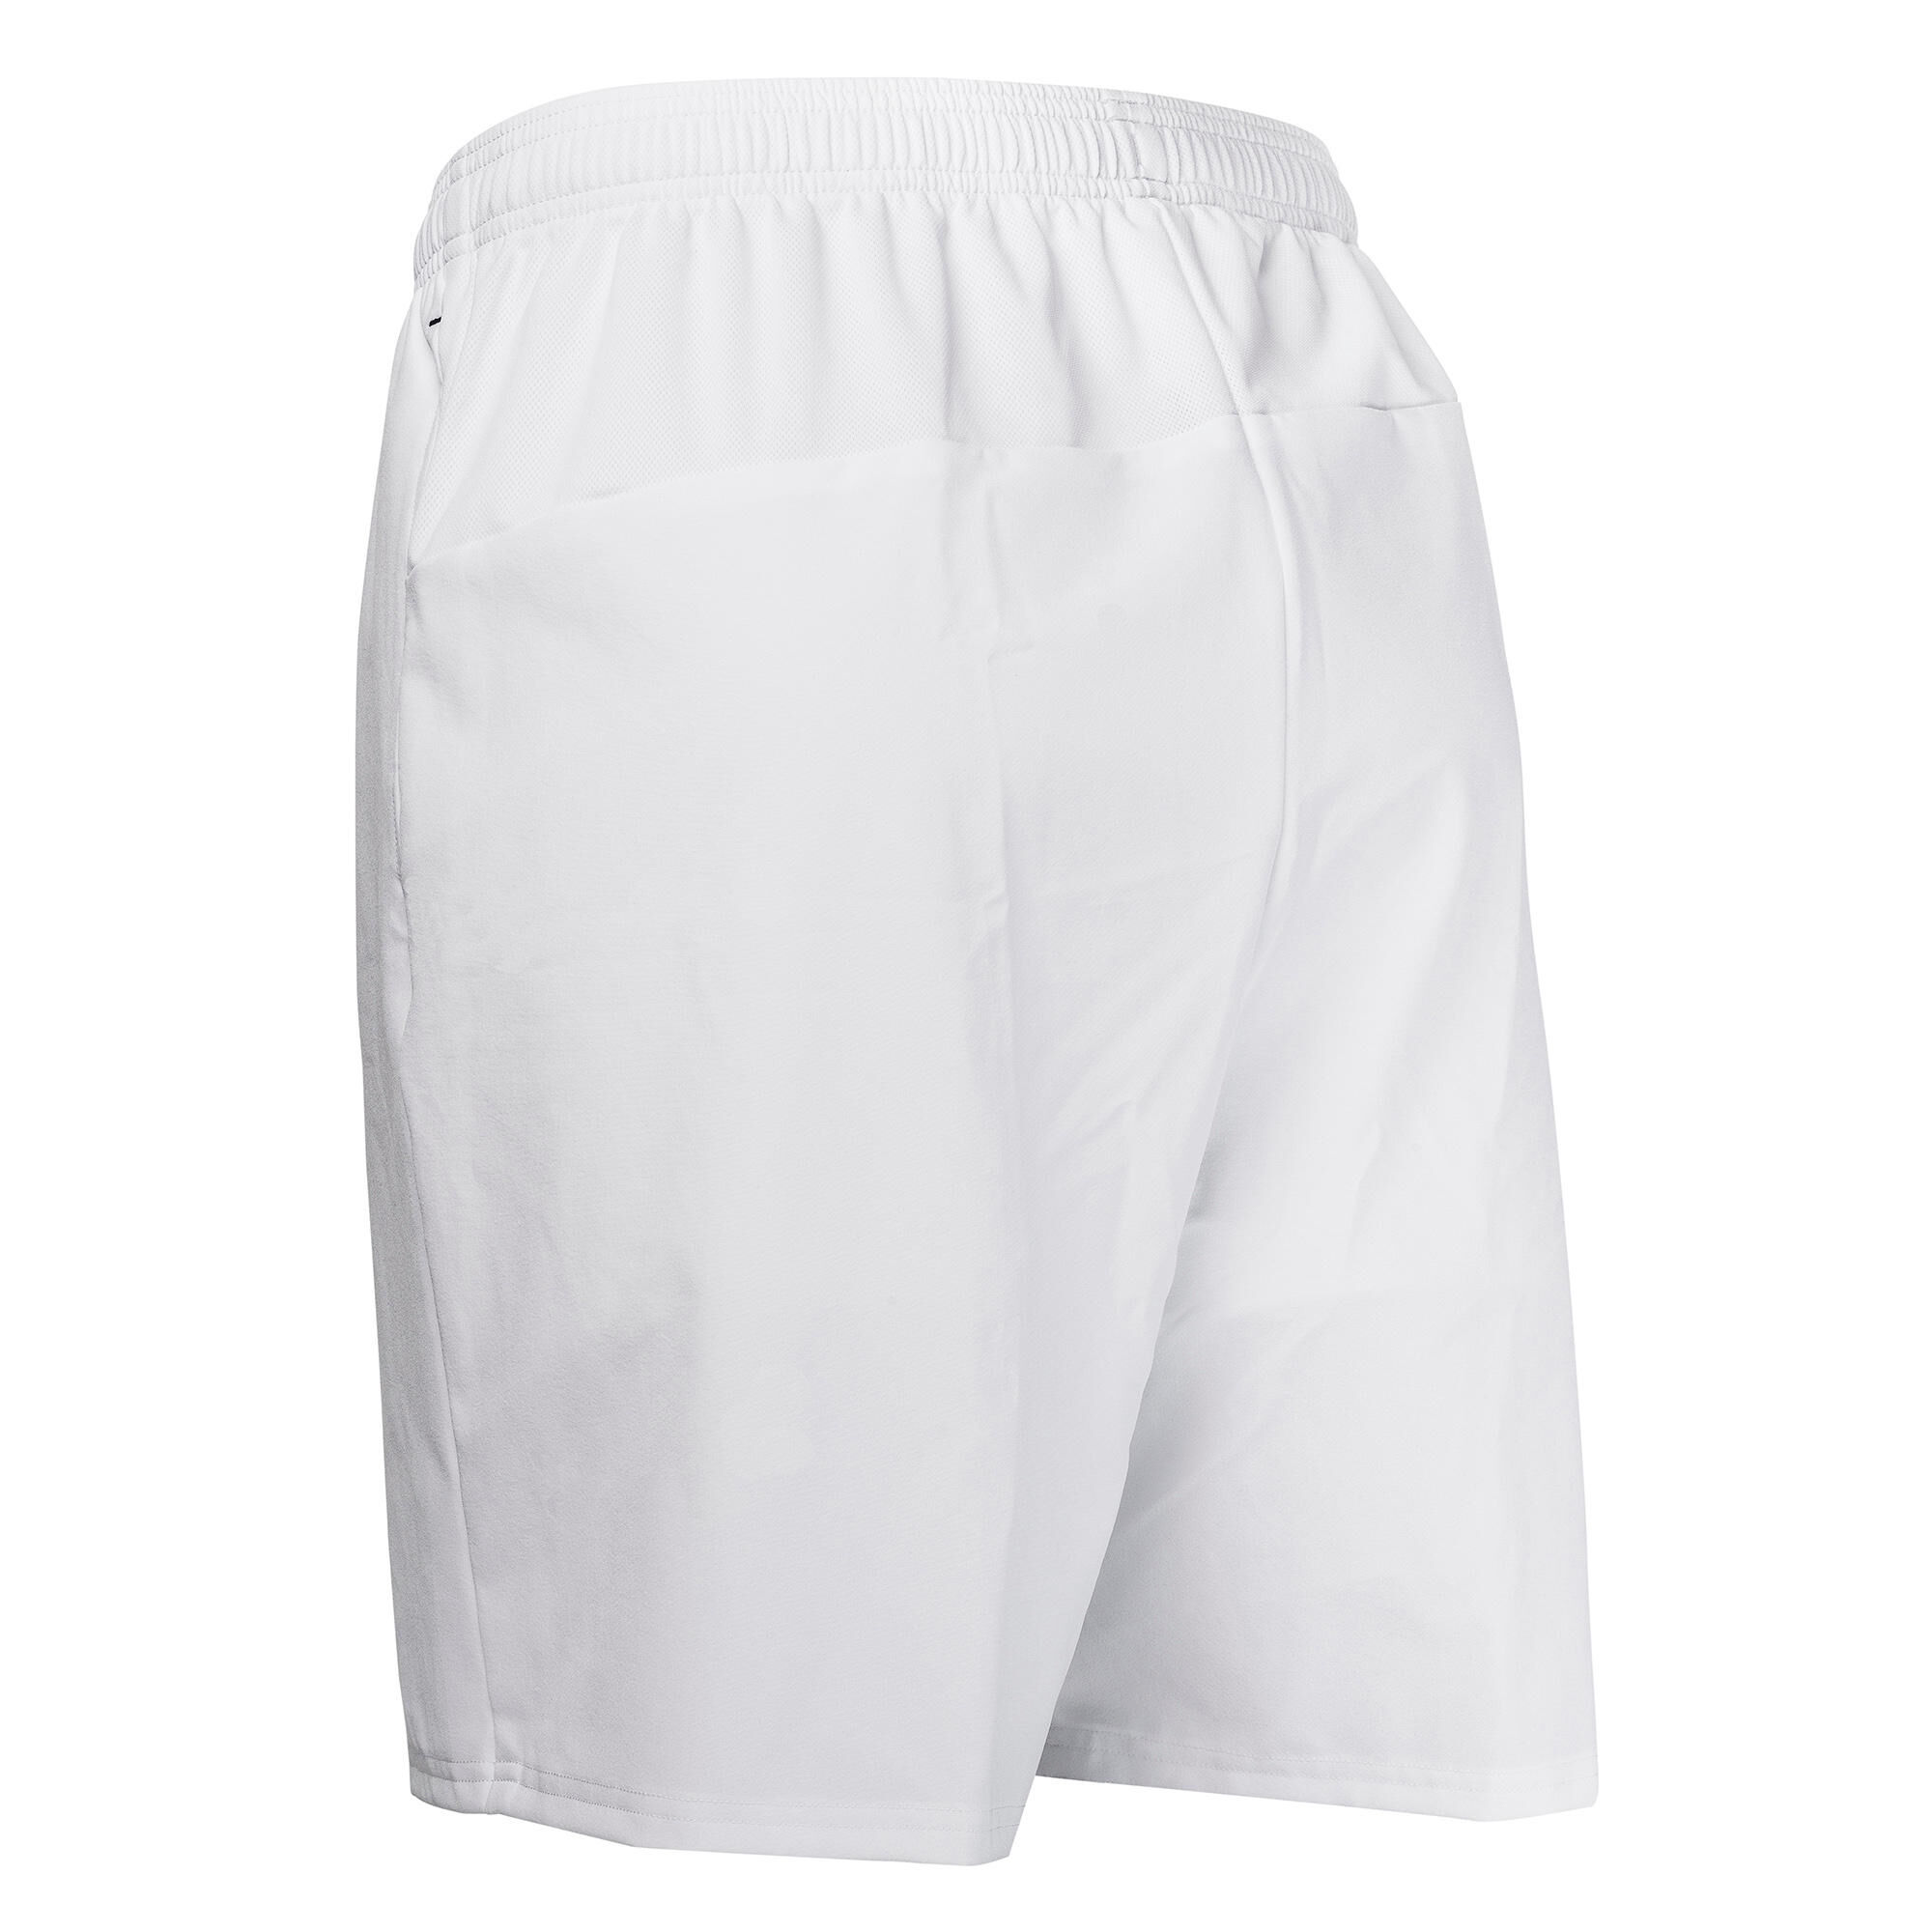 KOROK FH500 Field Hockey Shorts - White